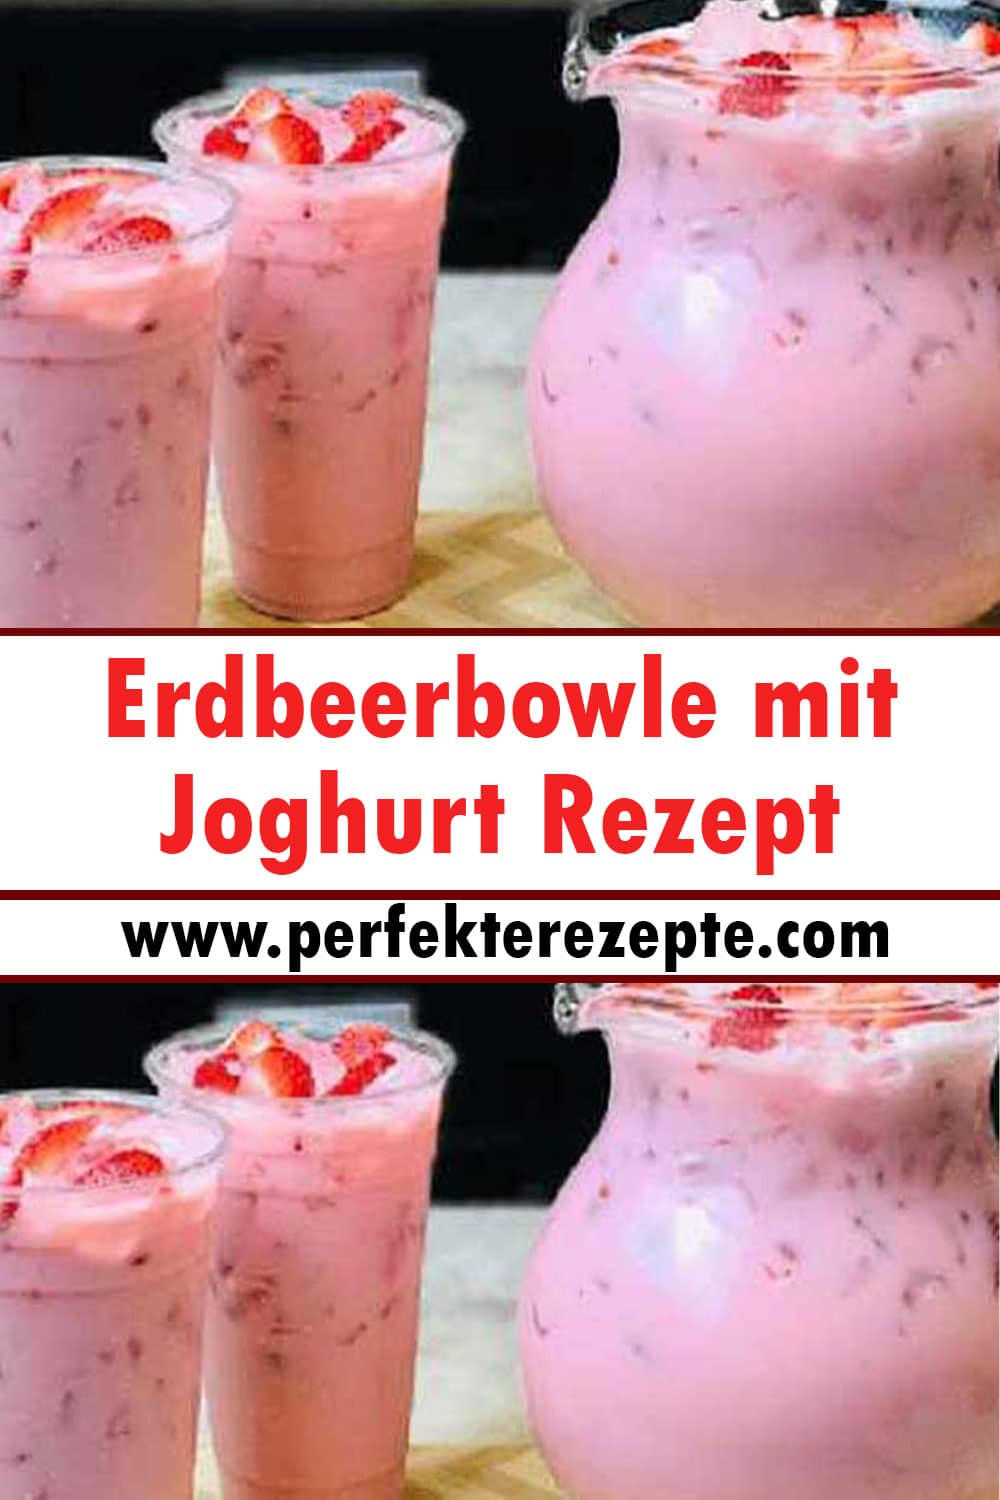 Erdbeerbowle mit Joghurt Rezept, ein Hammergetränk!